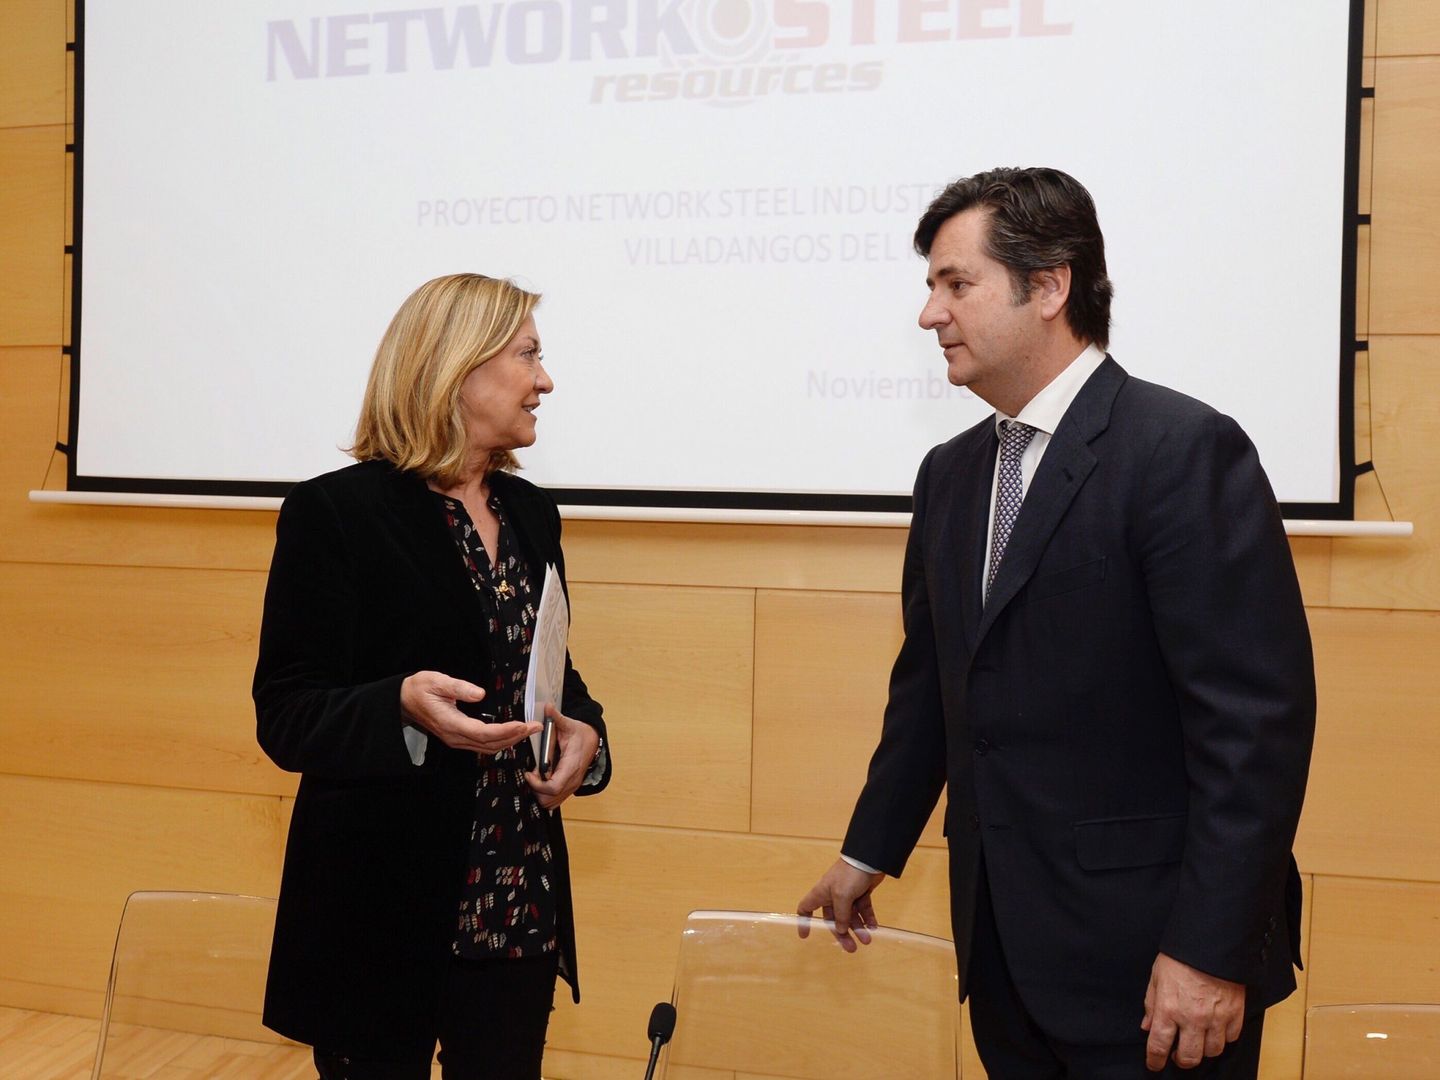 La consejera de Economía de CyL, Pilar del Olmo, conversa con el presidente de Network Steel. (EFE)